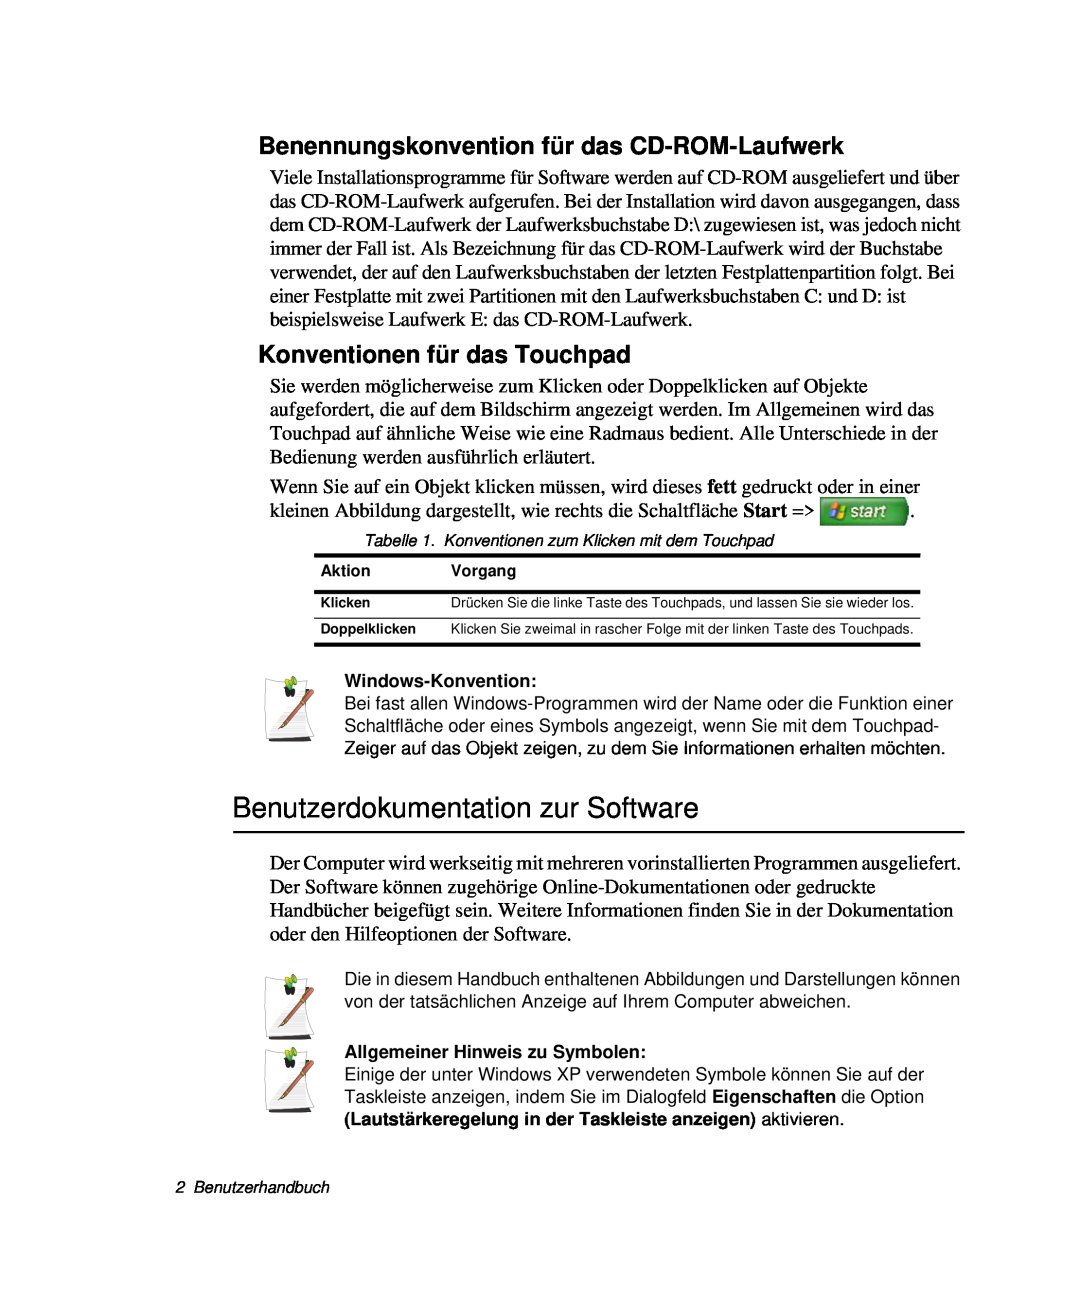 Samsung NP-P60TV01/SEG, NP-X60TV02/SEG Benutzerdokumentation zur Software, Benennungskonvention für das CD-ROM-Laufwerk 